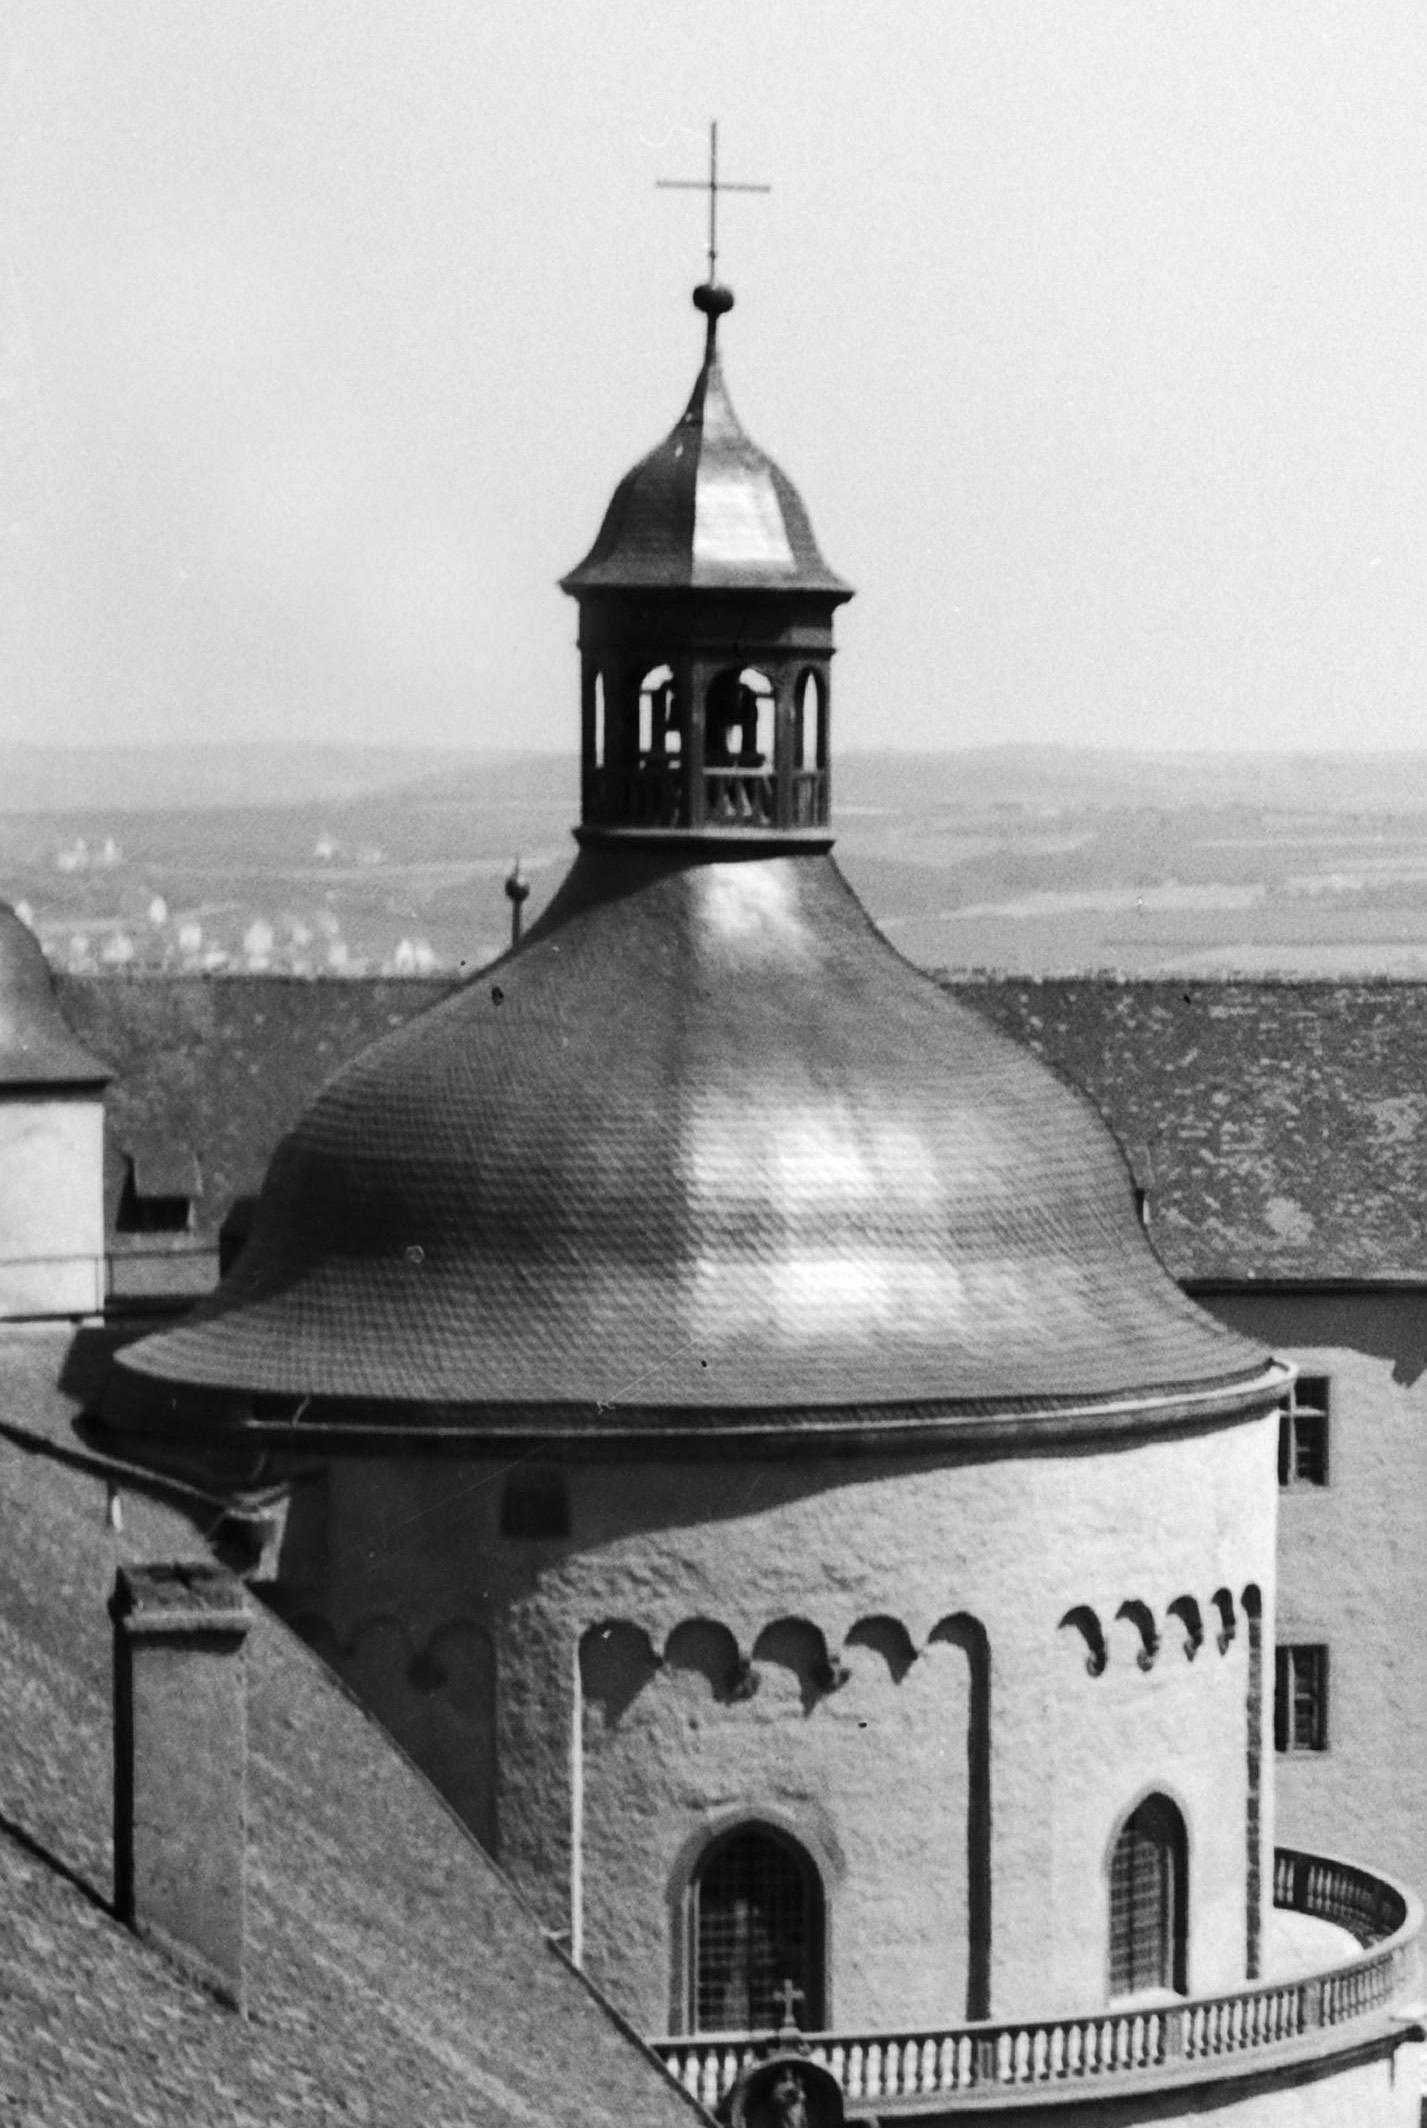 Wrzburg, Allemagne 1935, Imprimé ultérieurement - Photograph de Karl Heinrich Lämmel